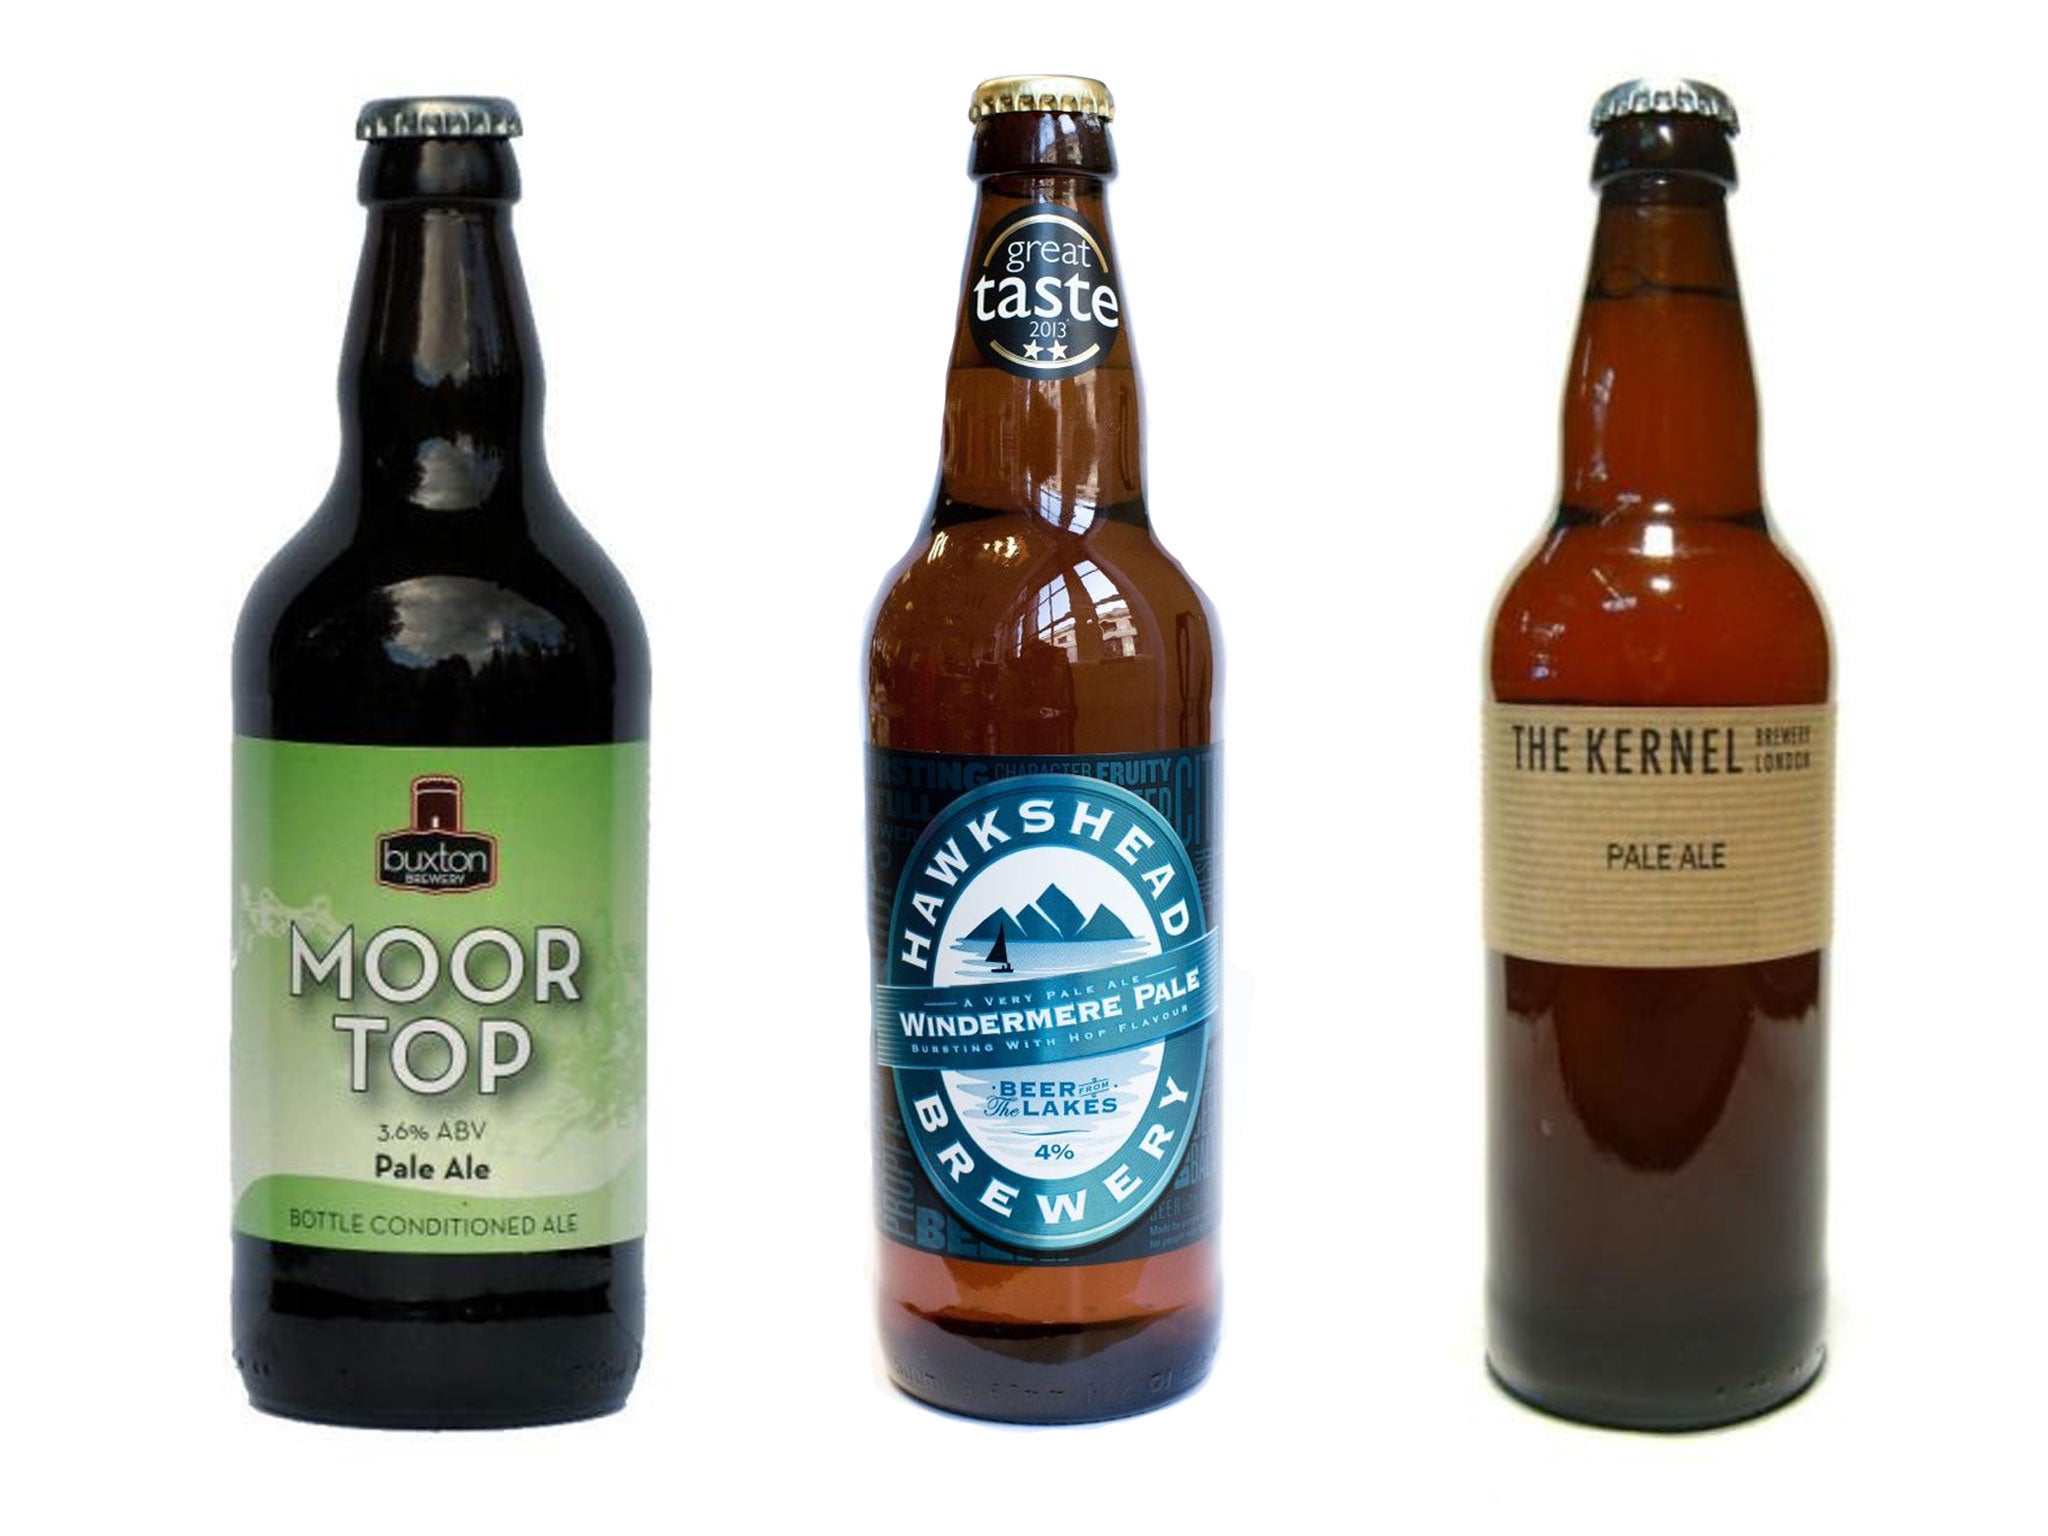 Buxton Moor Top; Hawkshead Windermere Pale Ale; The Kernel Table Beer